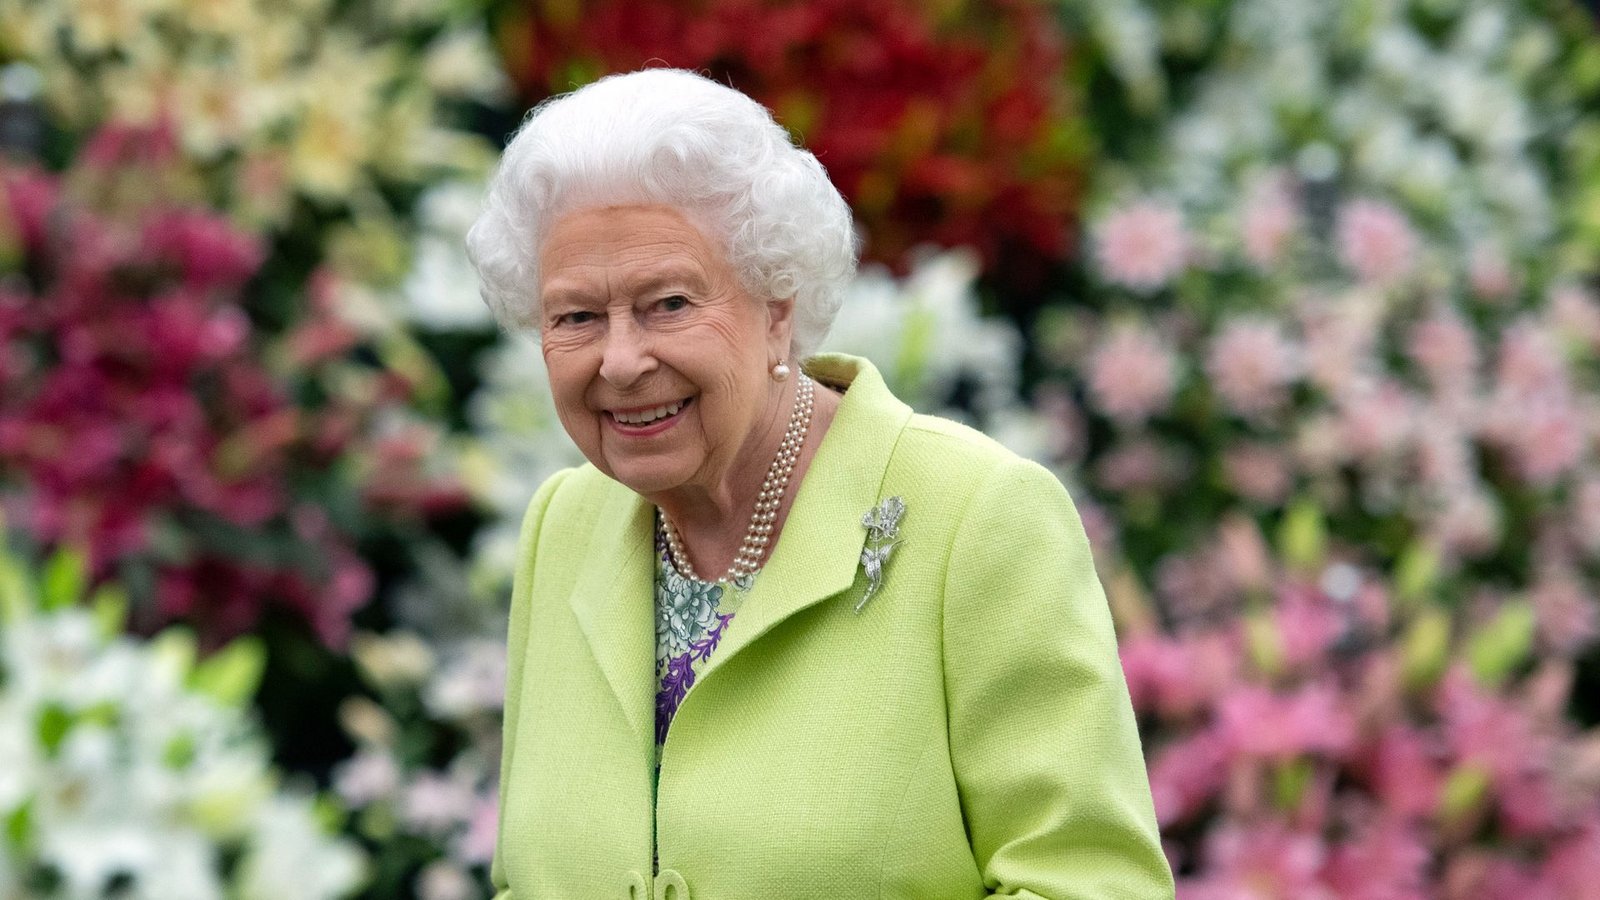 Königin Elizabeth II. besucht die Chelsea Flower Show (2019).Foto: Geoff Pugh/PA Wire/dpa